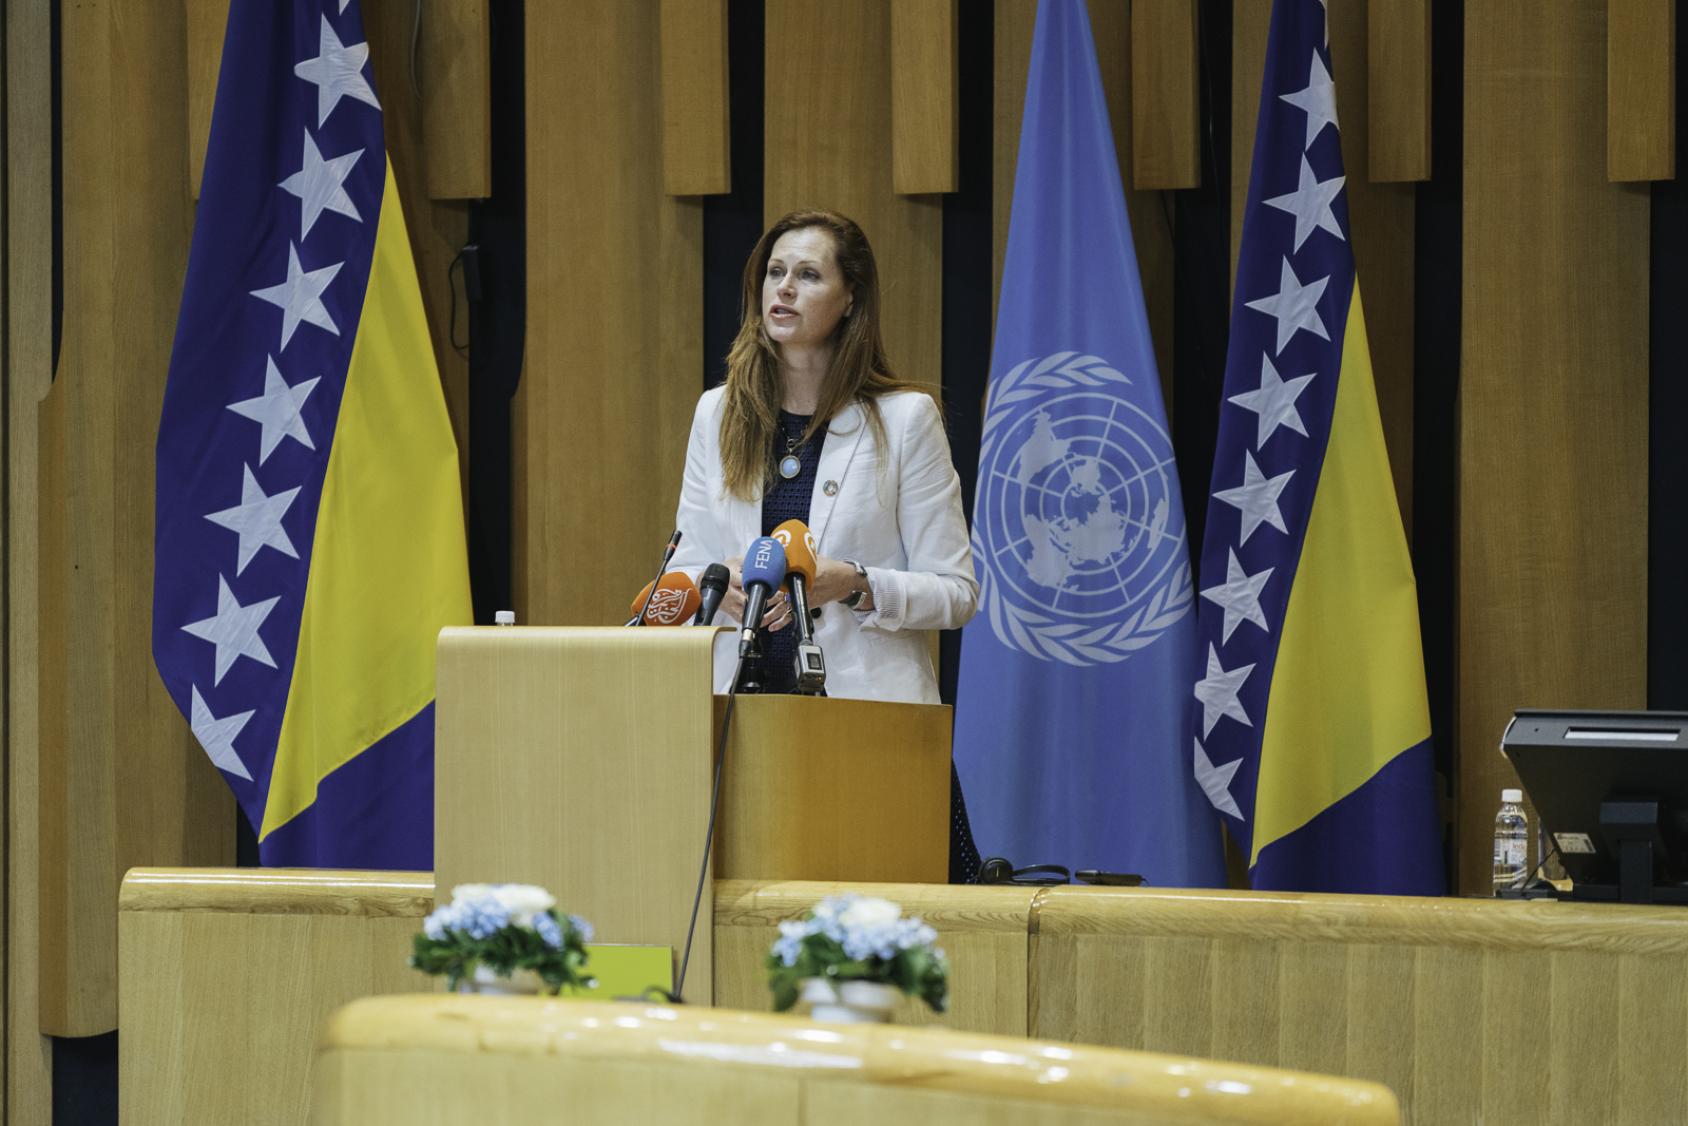 Una mujer con traje beige habla por un micrófono en un podio.